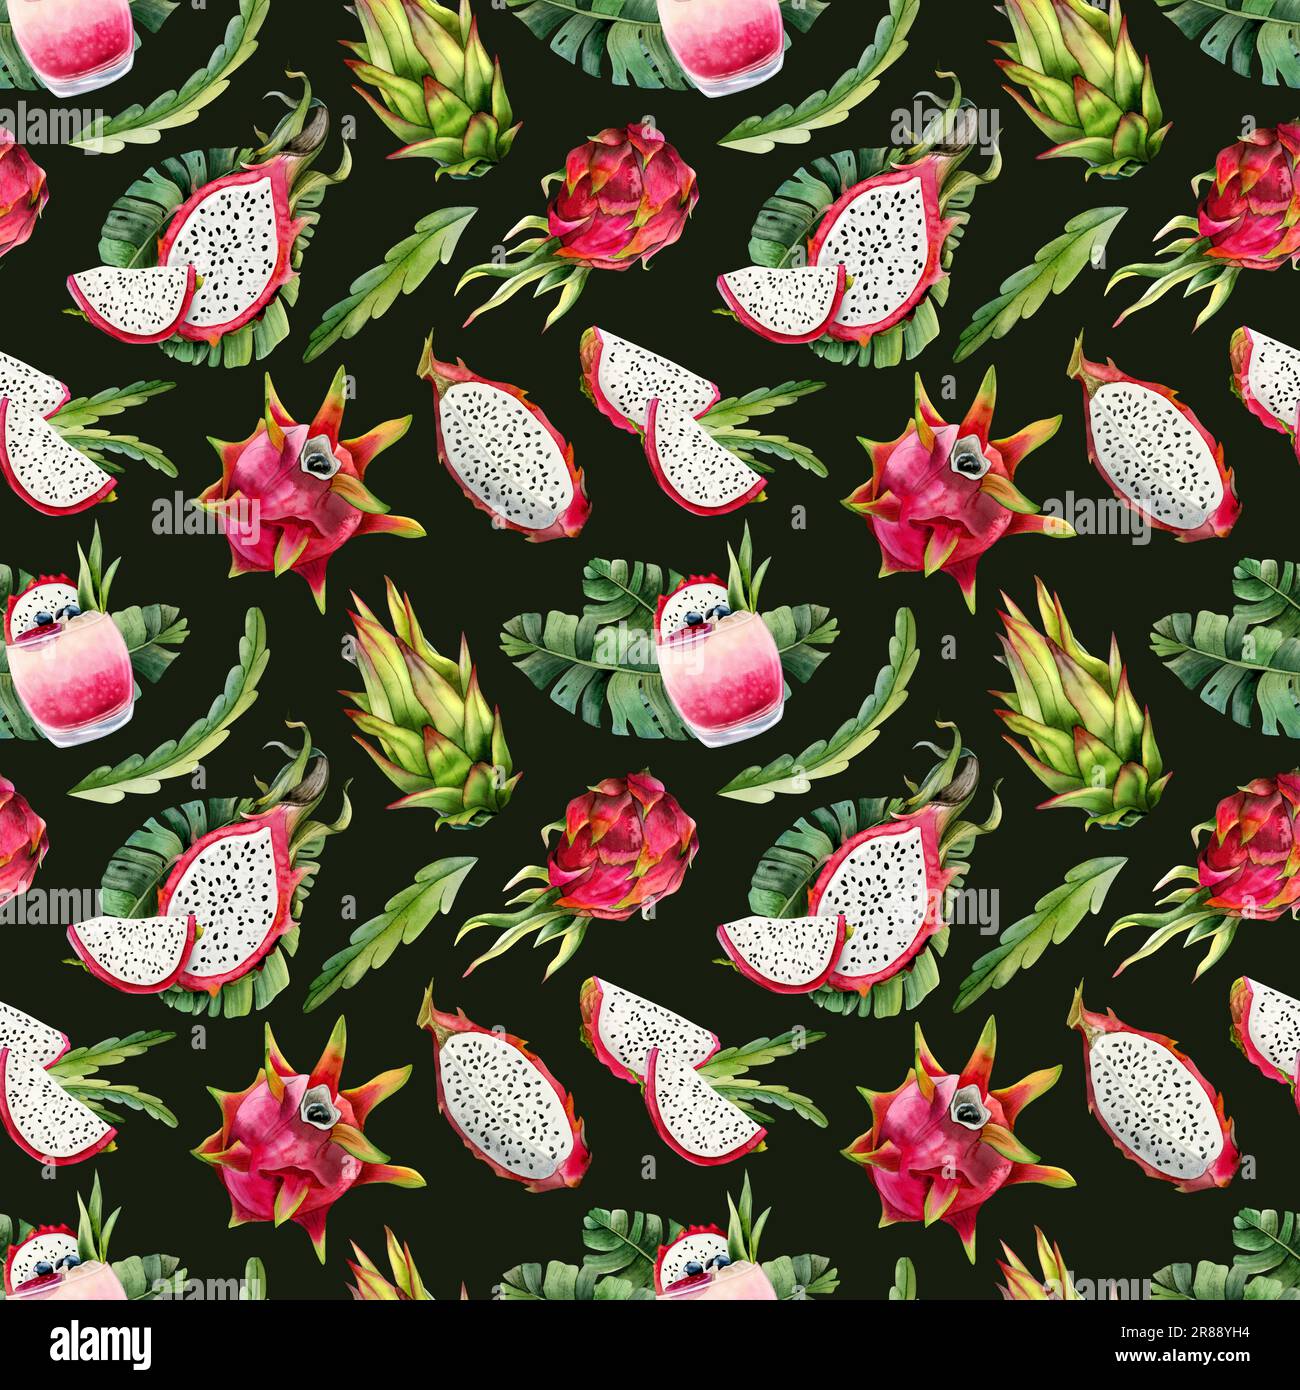 Verde scuro rosa pitaya frutti drago acquerello e foglie tropicali modello senza cuciture con disegni pitahaya Foto Stock